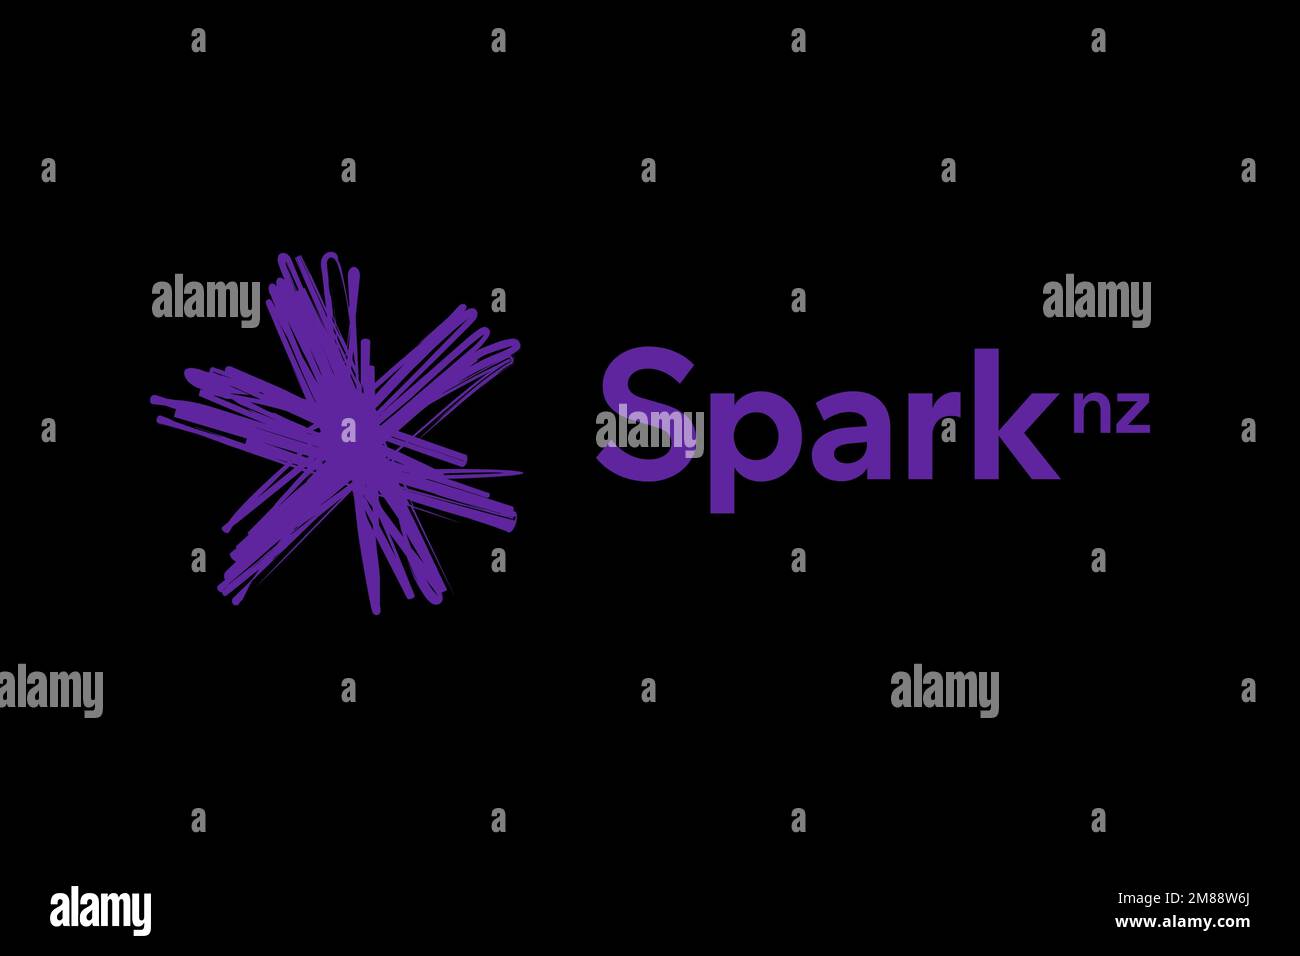 Spark New Zealand, Logo, Black background Stock Photo